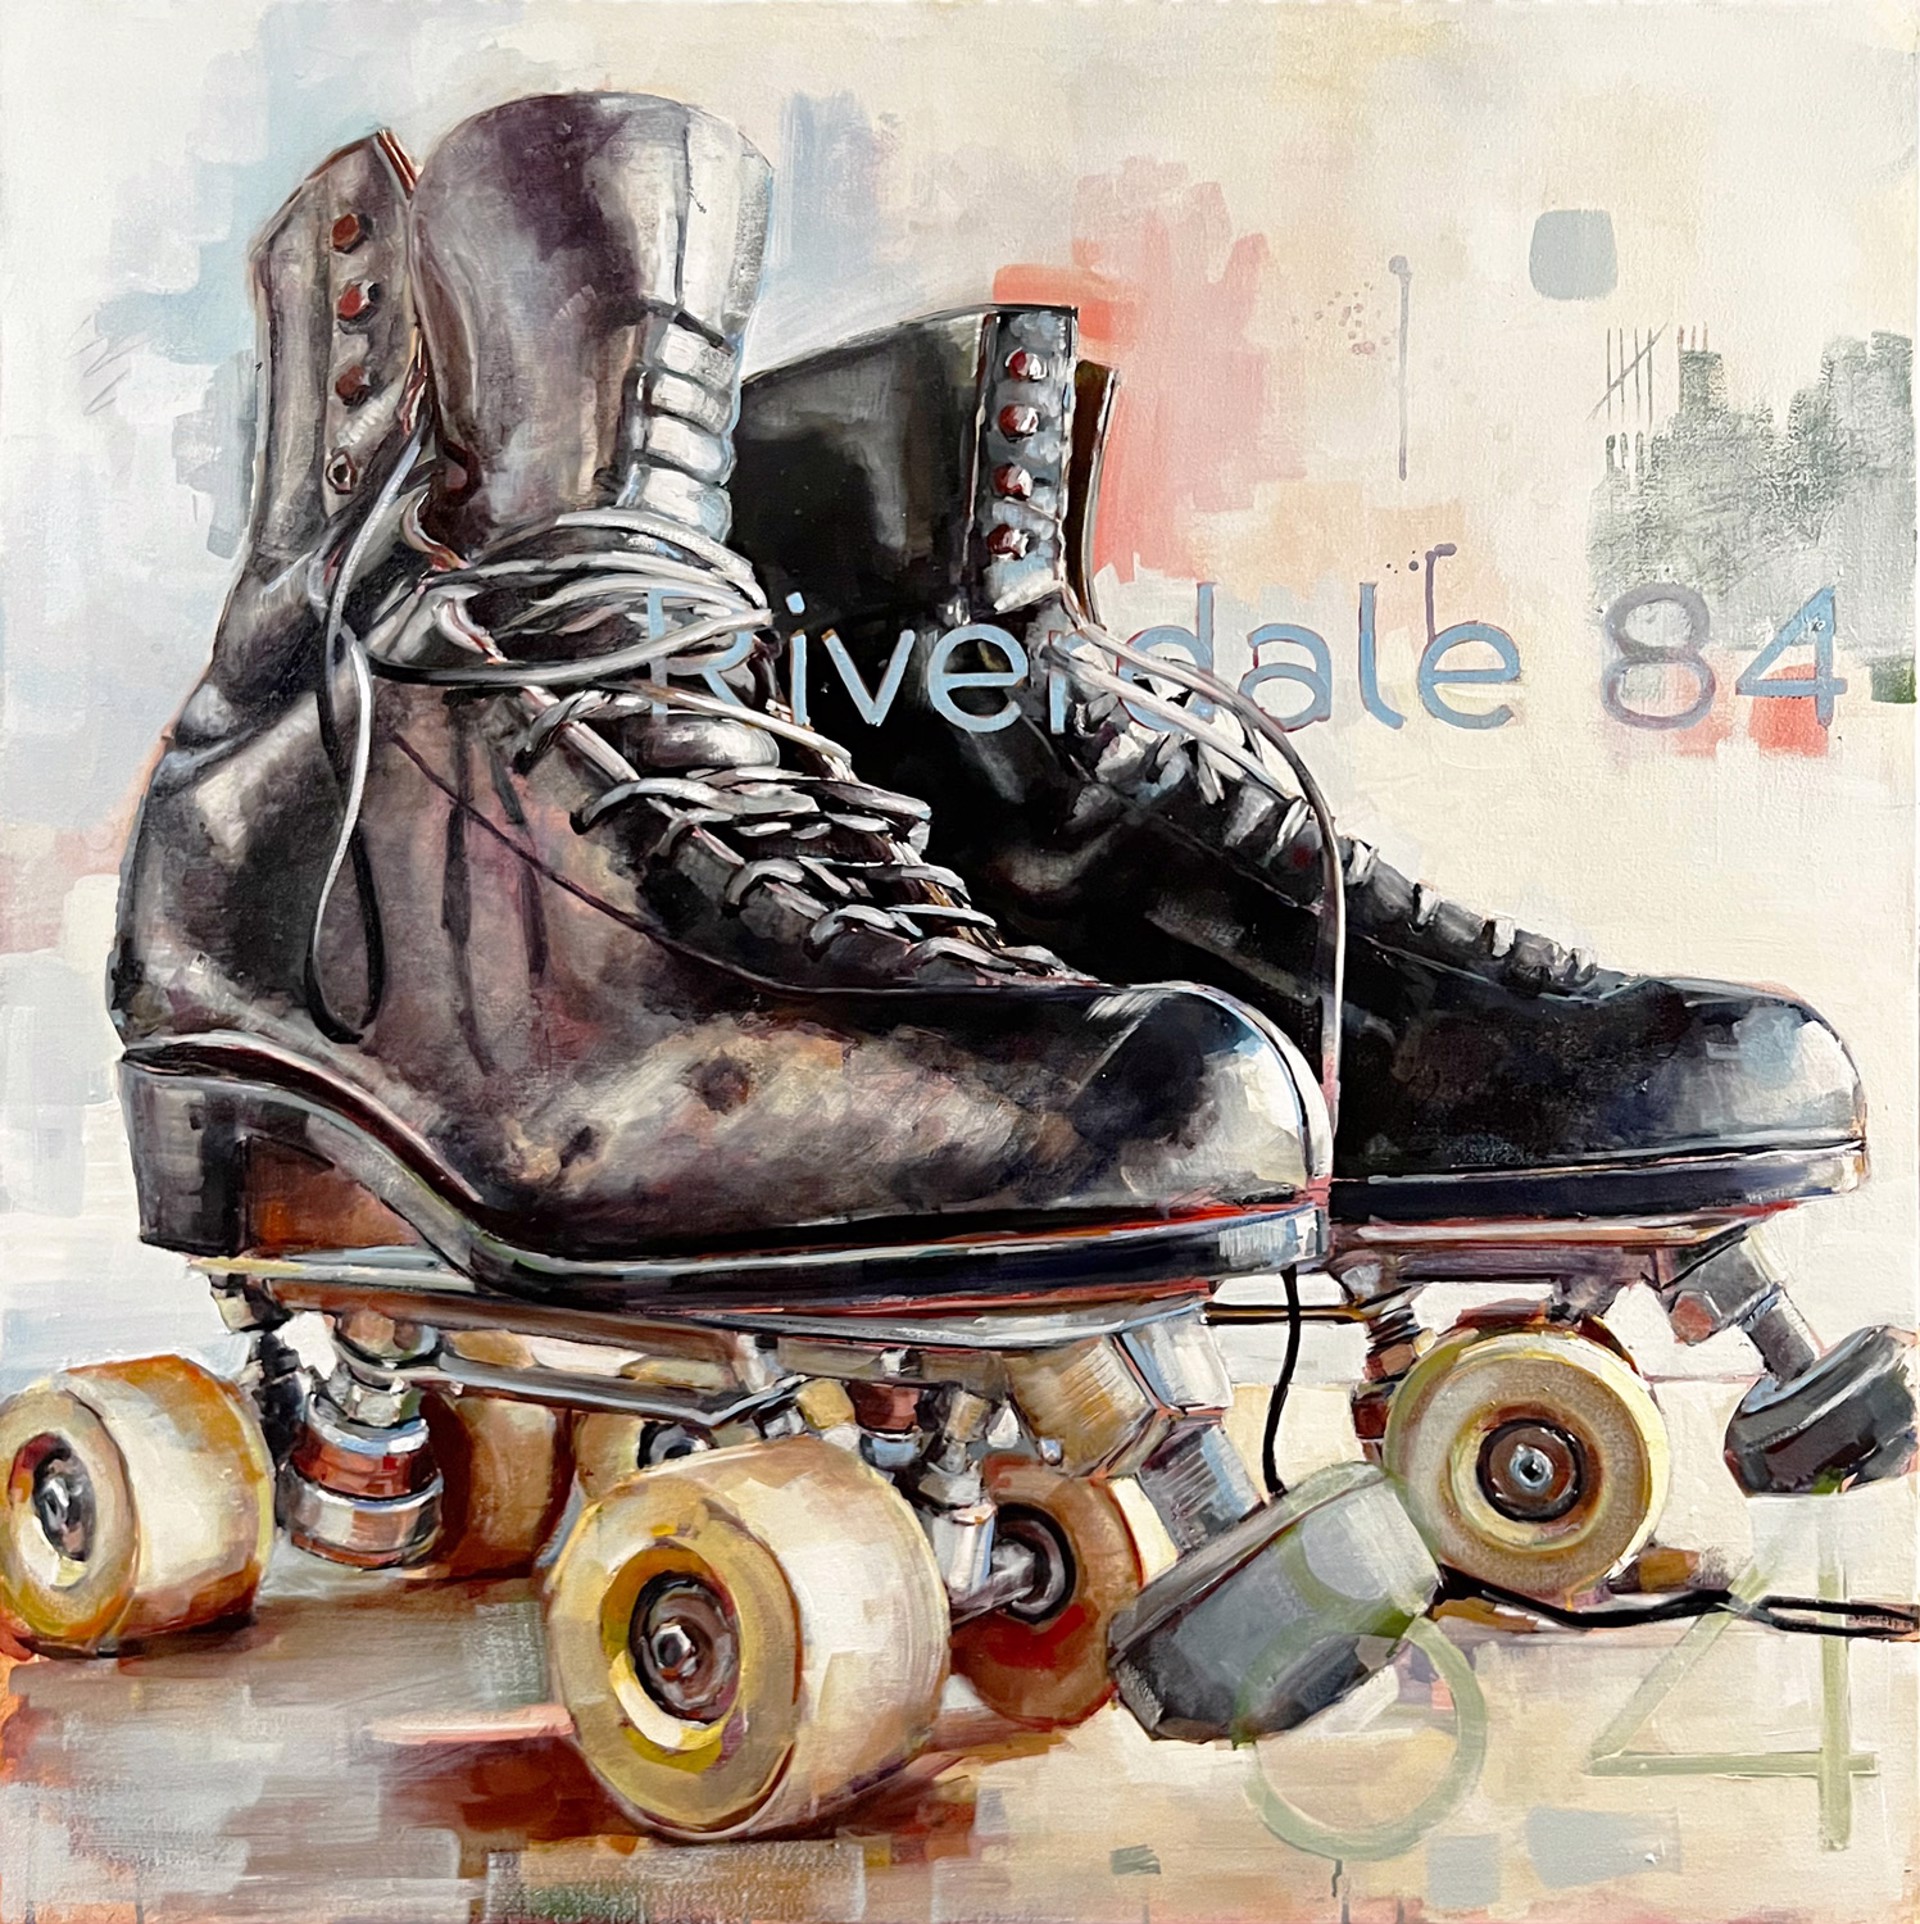 Riverdale 84 by Tucker Eason